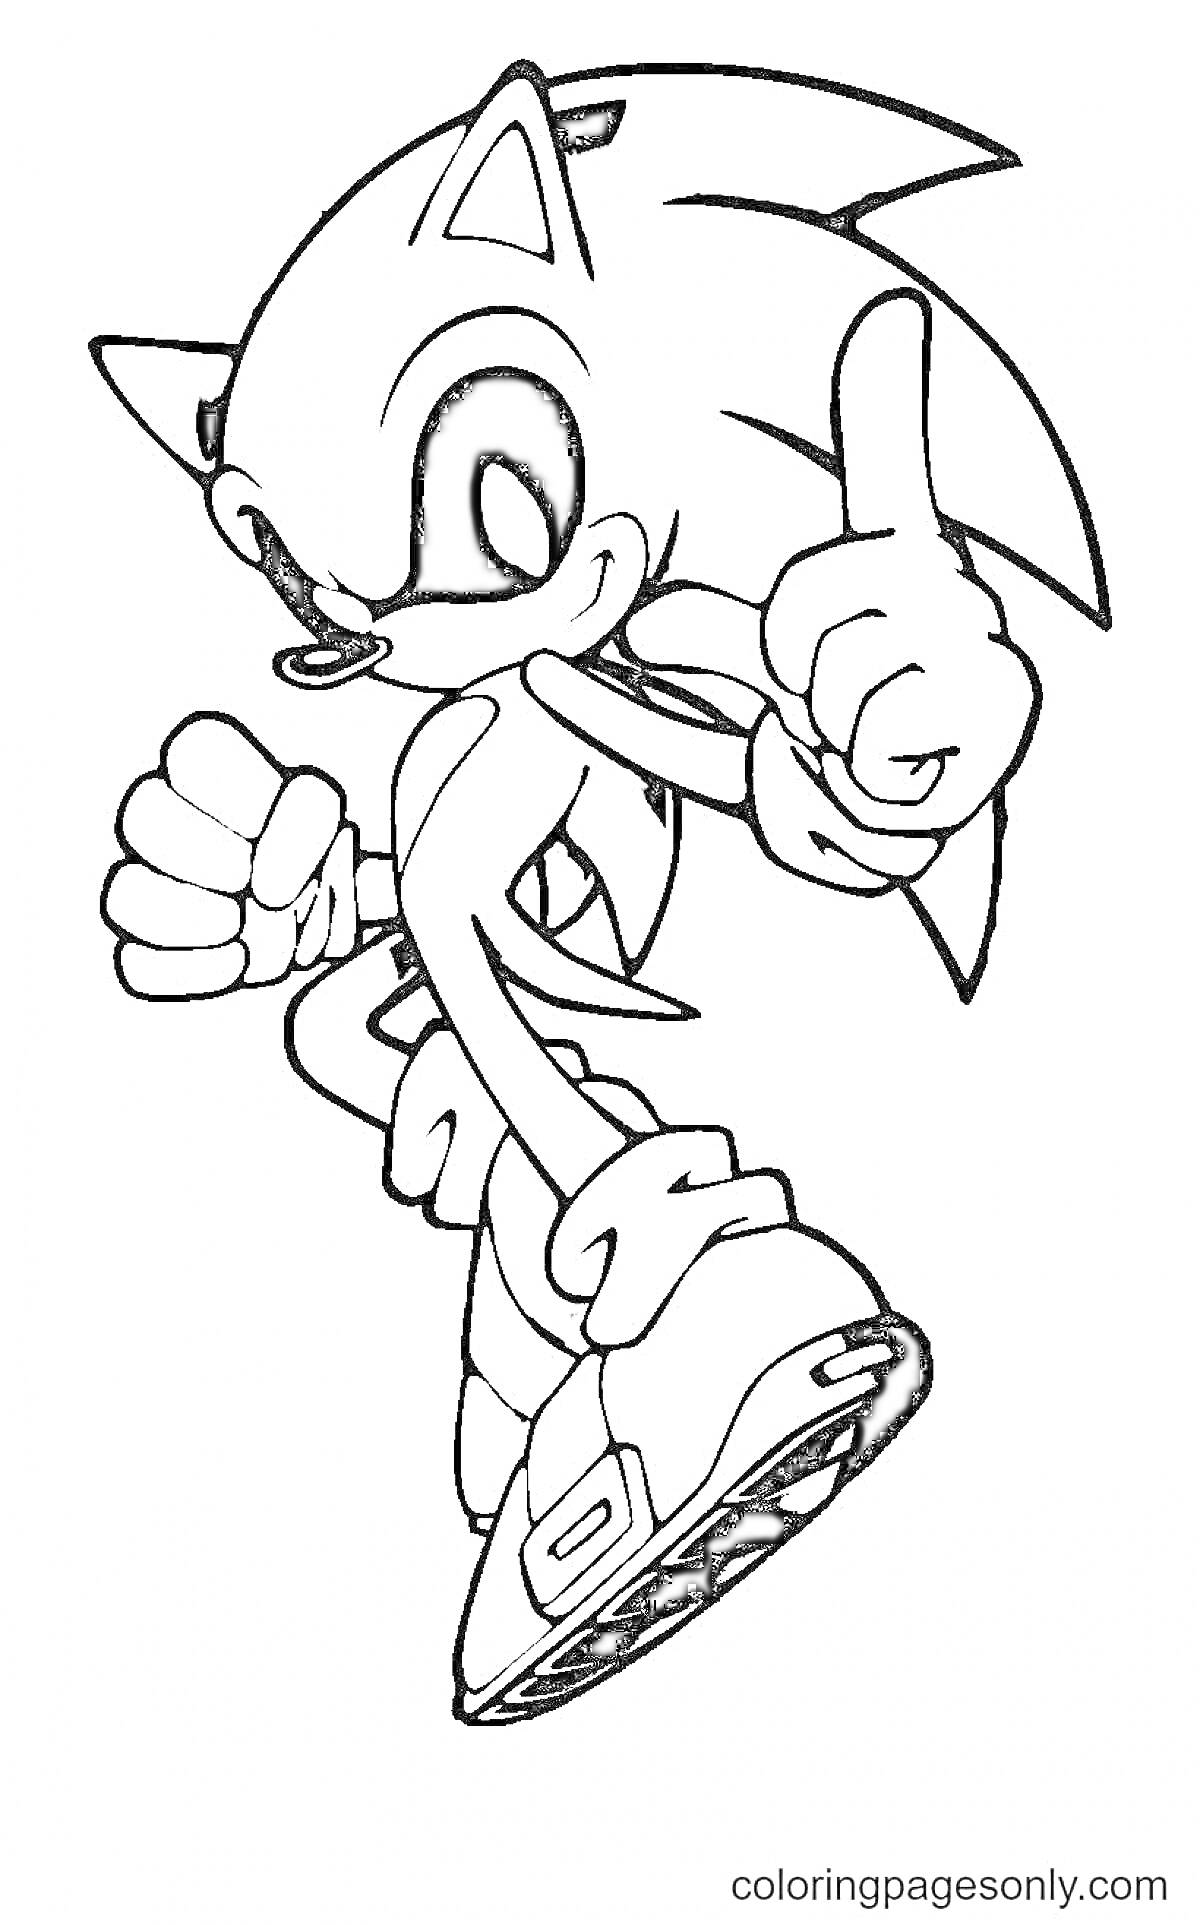 Sonic EXE показывает большой палец вверх, стоя на одной ноге